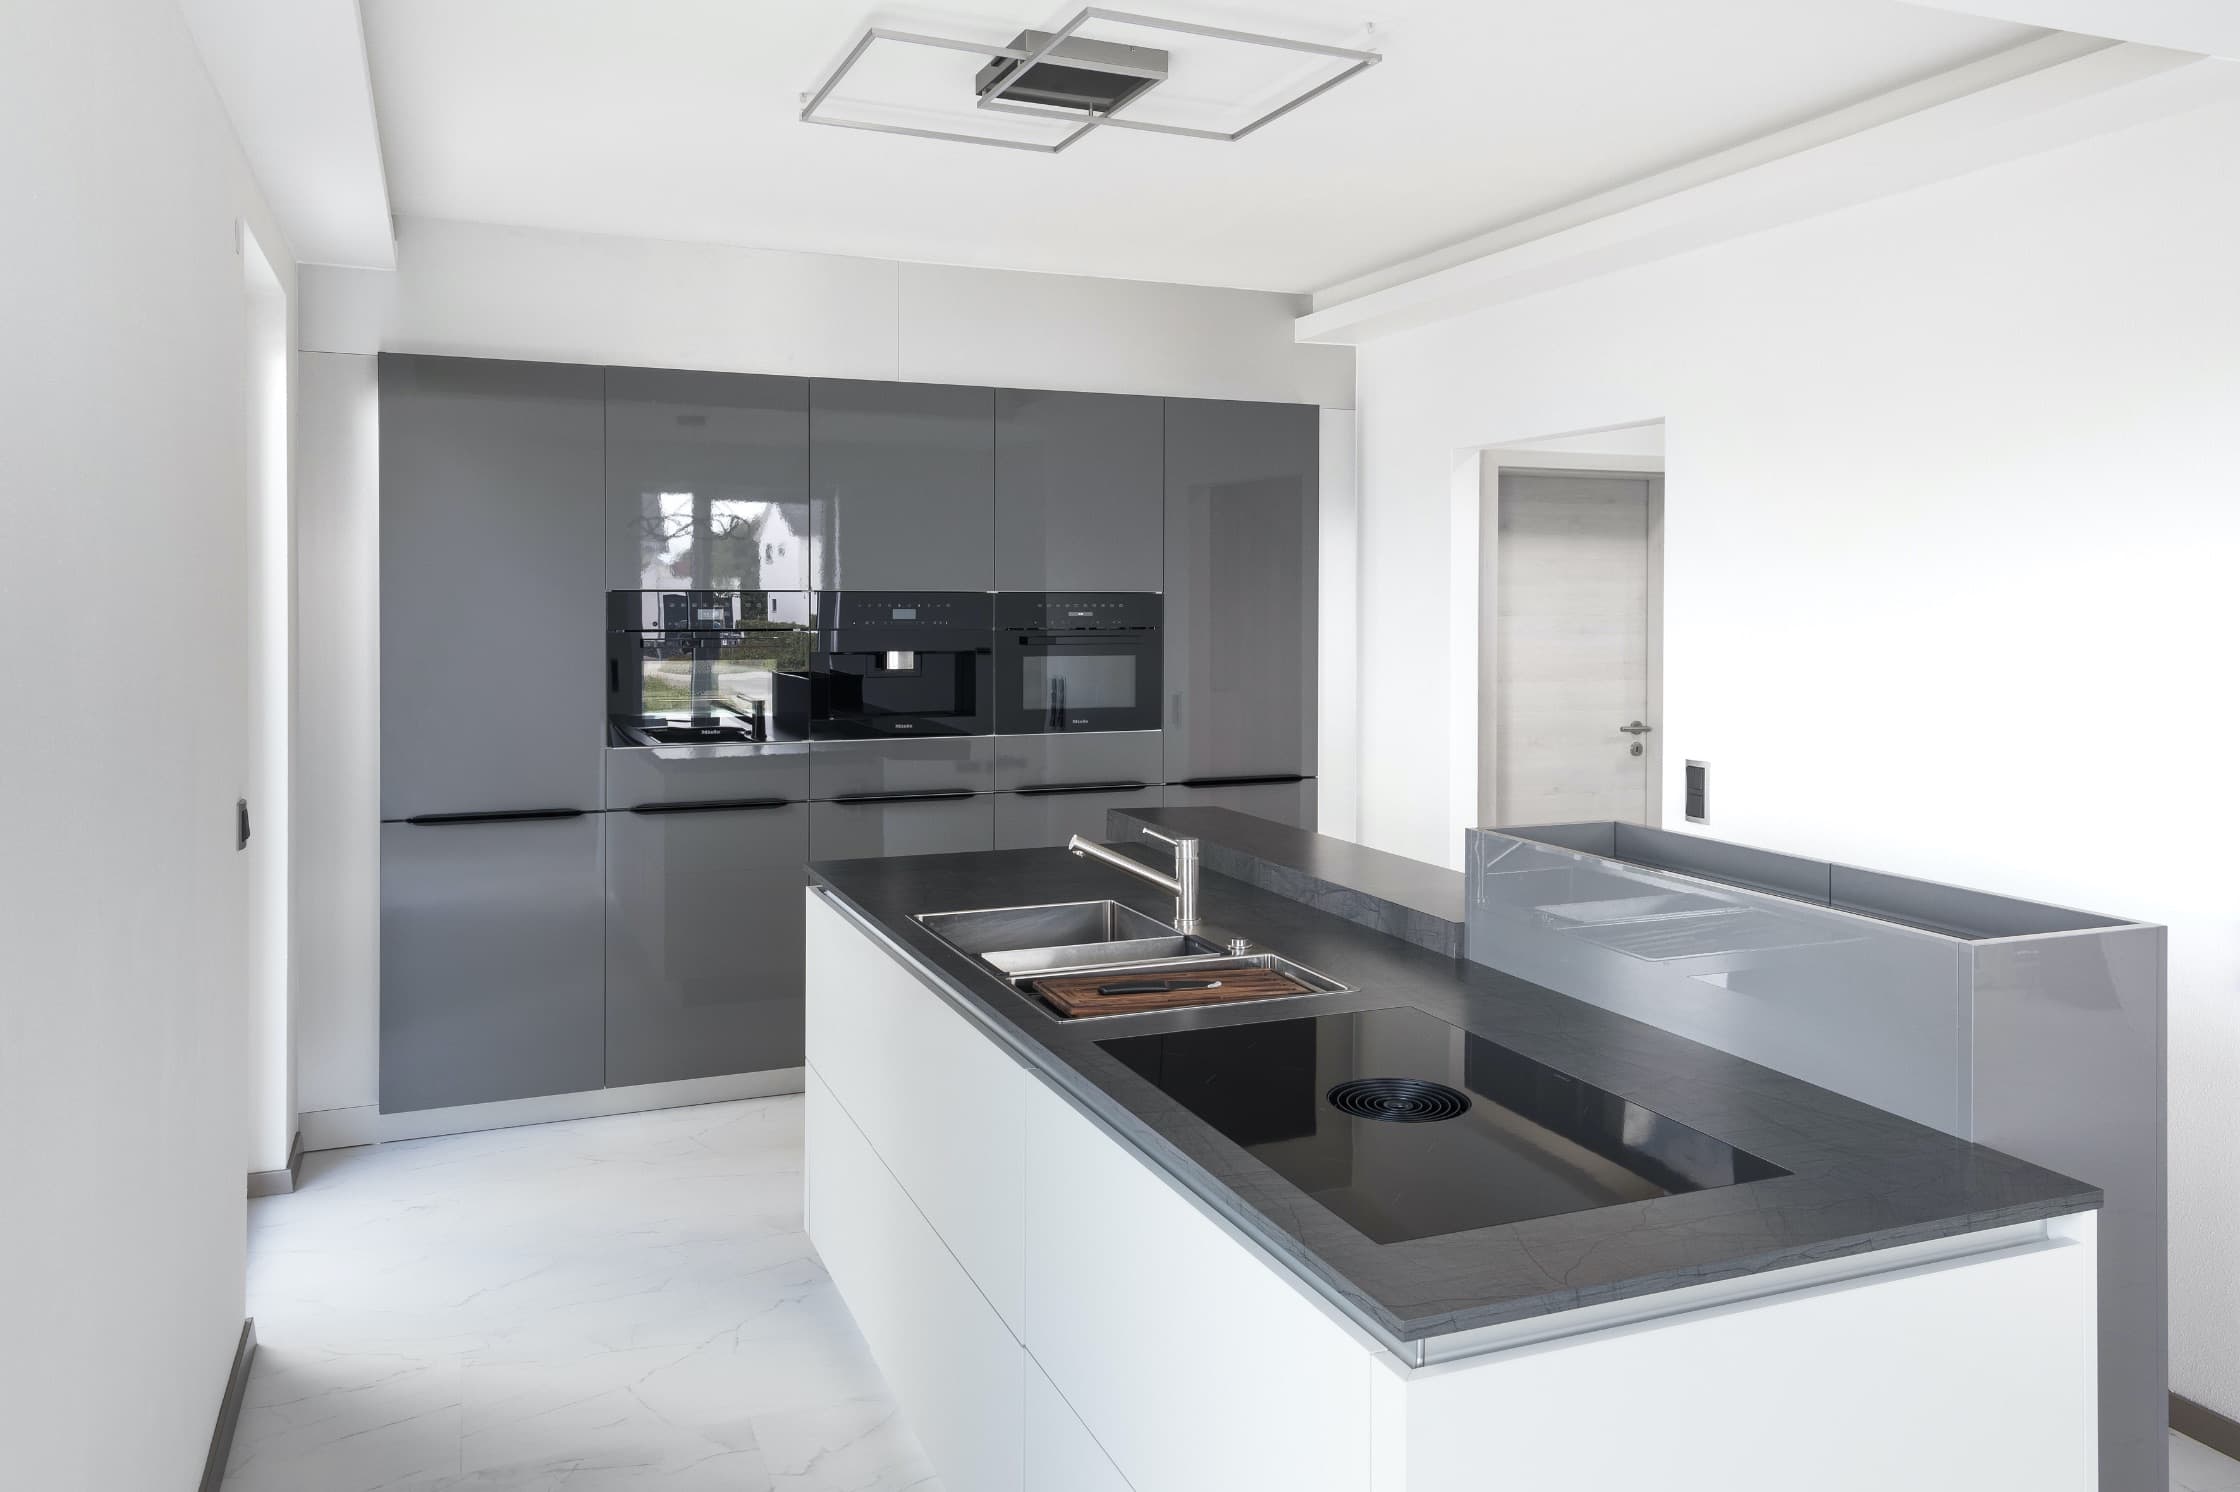 Grau-weiße Küche mit Kochinsel und ausziehbarer Arbeitsplatte